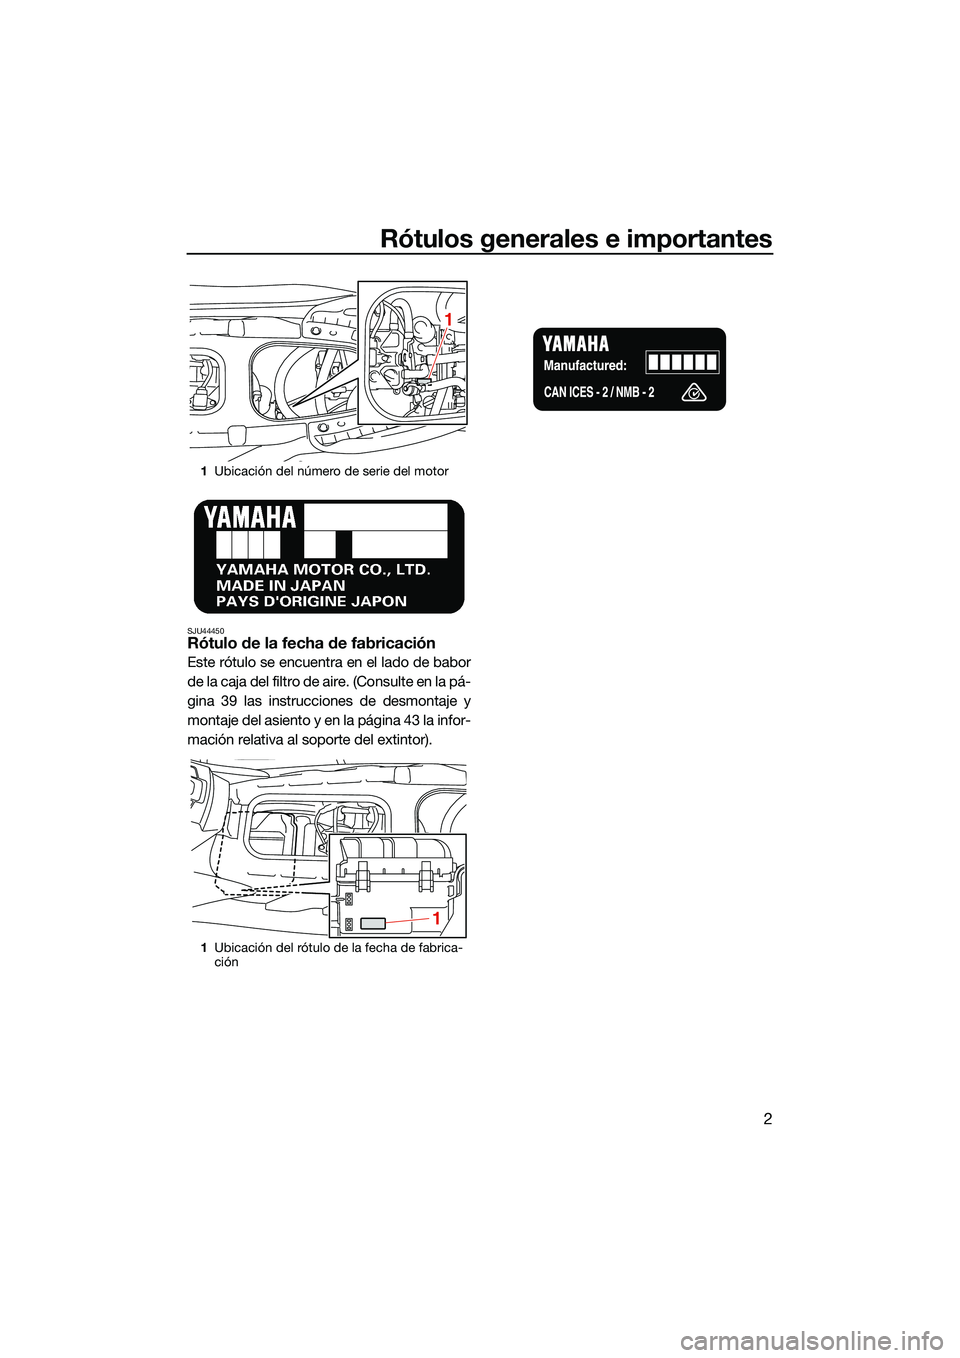 YAMAHA EX 2022  Manuale de Empleo (in Spanish) Rótulos generales e importantes
2
SJU44450Rótulo de la fecha de fabricación
Este rótulo se encuentra en el lado de babor
de la caja del filtro de aire. (Consulte en la pá-
gina 39 las instruccion